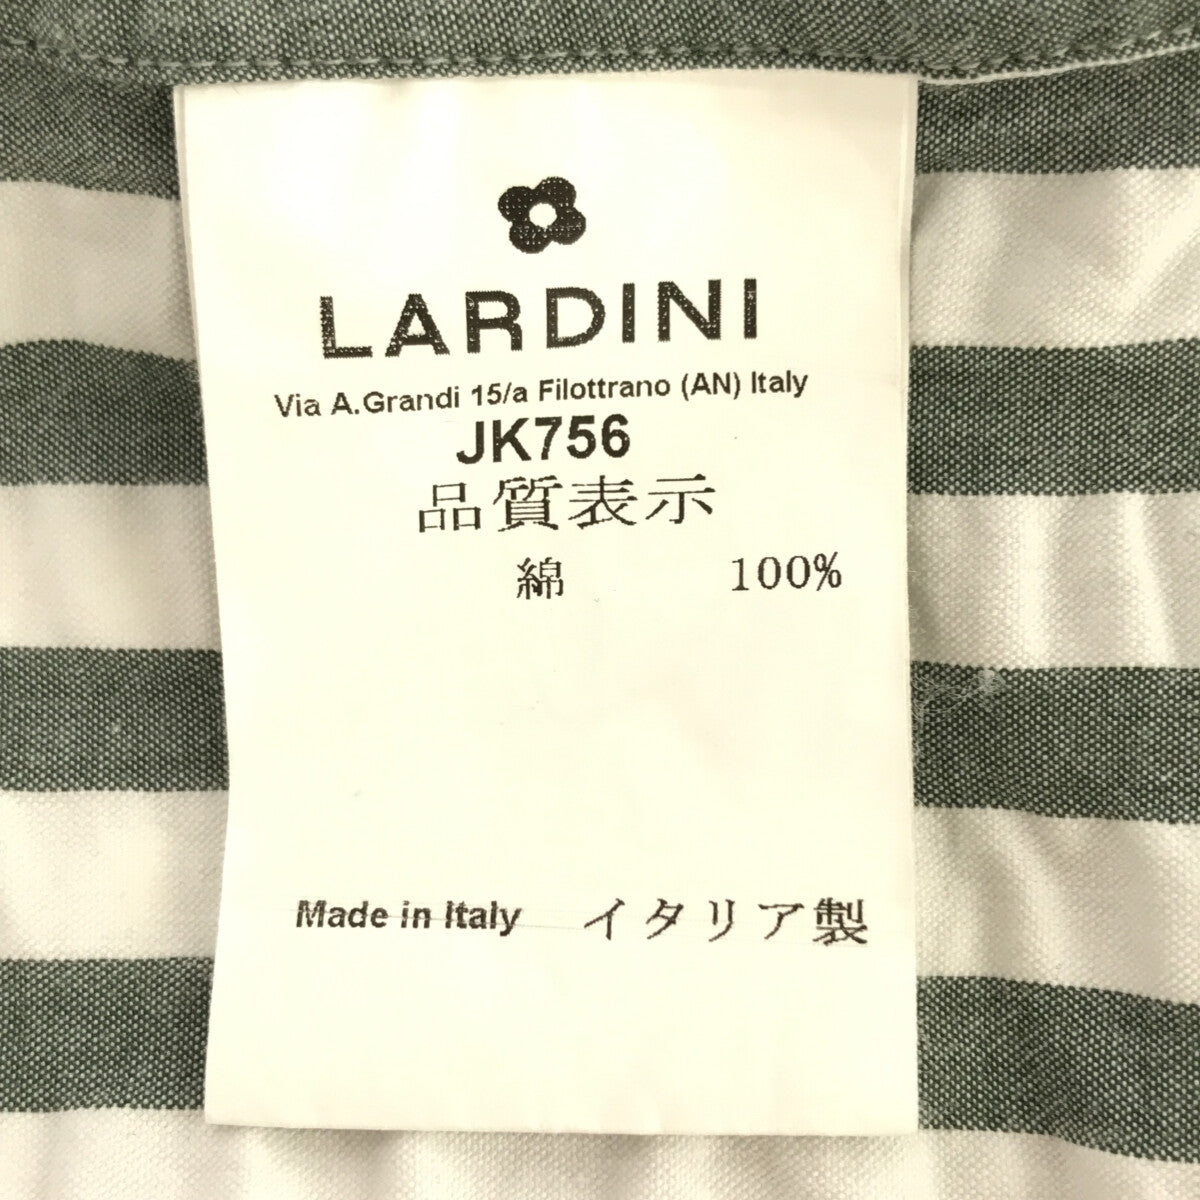 LARDINI / ラルディーニ | ブートニエール シアサッカー ストライプ 2B テーラードジャケット | S | グレー/ホワイト | メンズジャケット/アウター